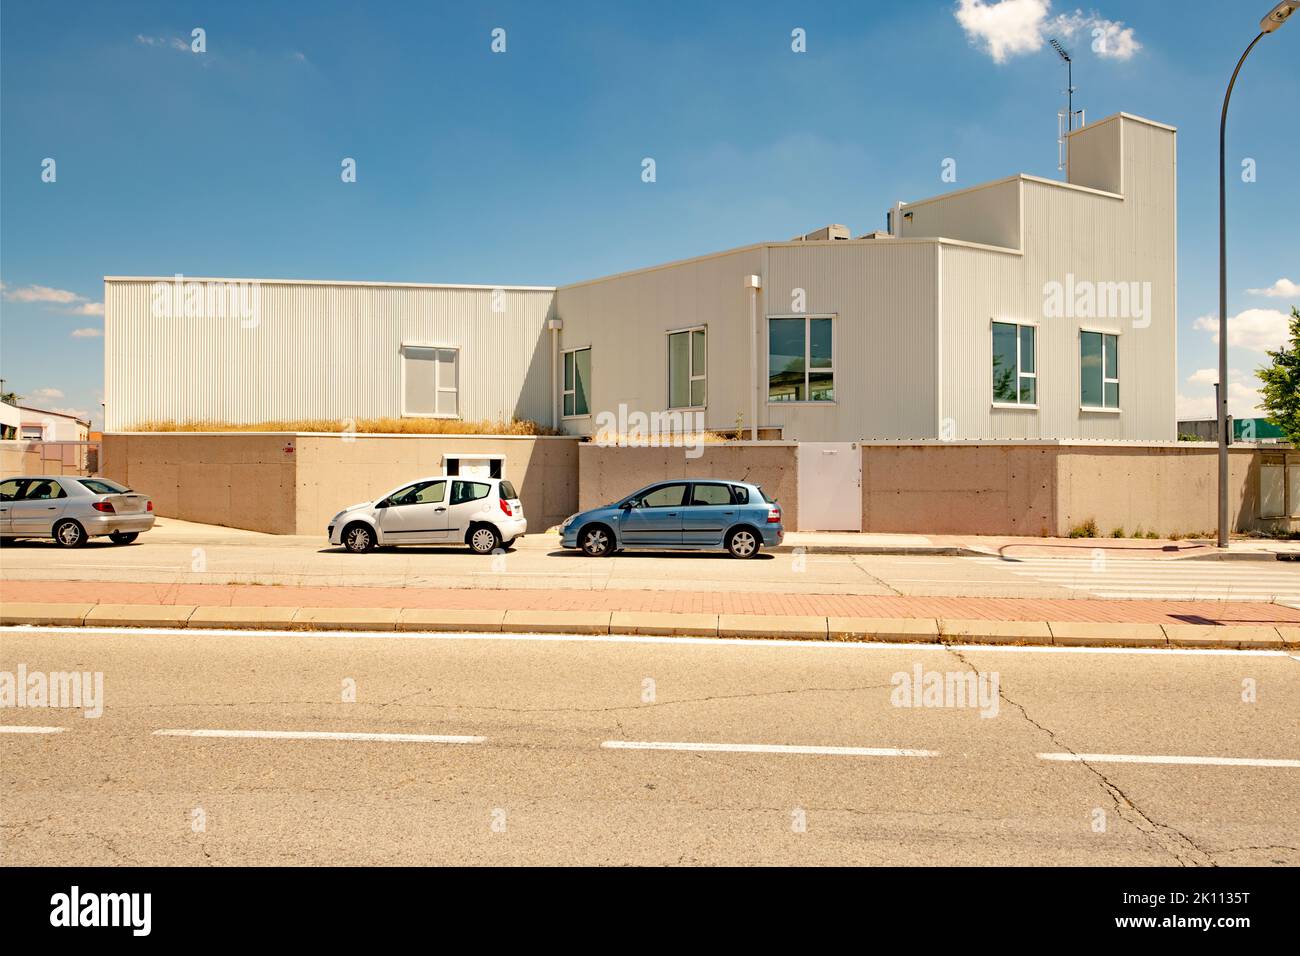 Fassade eines Industrielagers mit weißem Dach, Zementwand, Fenstern und geparkten Privatautos an einem sonnigen Tag Stockfoto